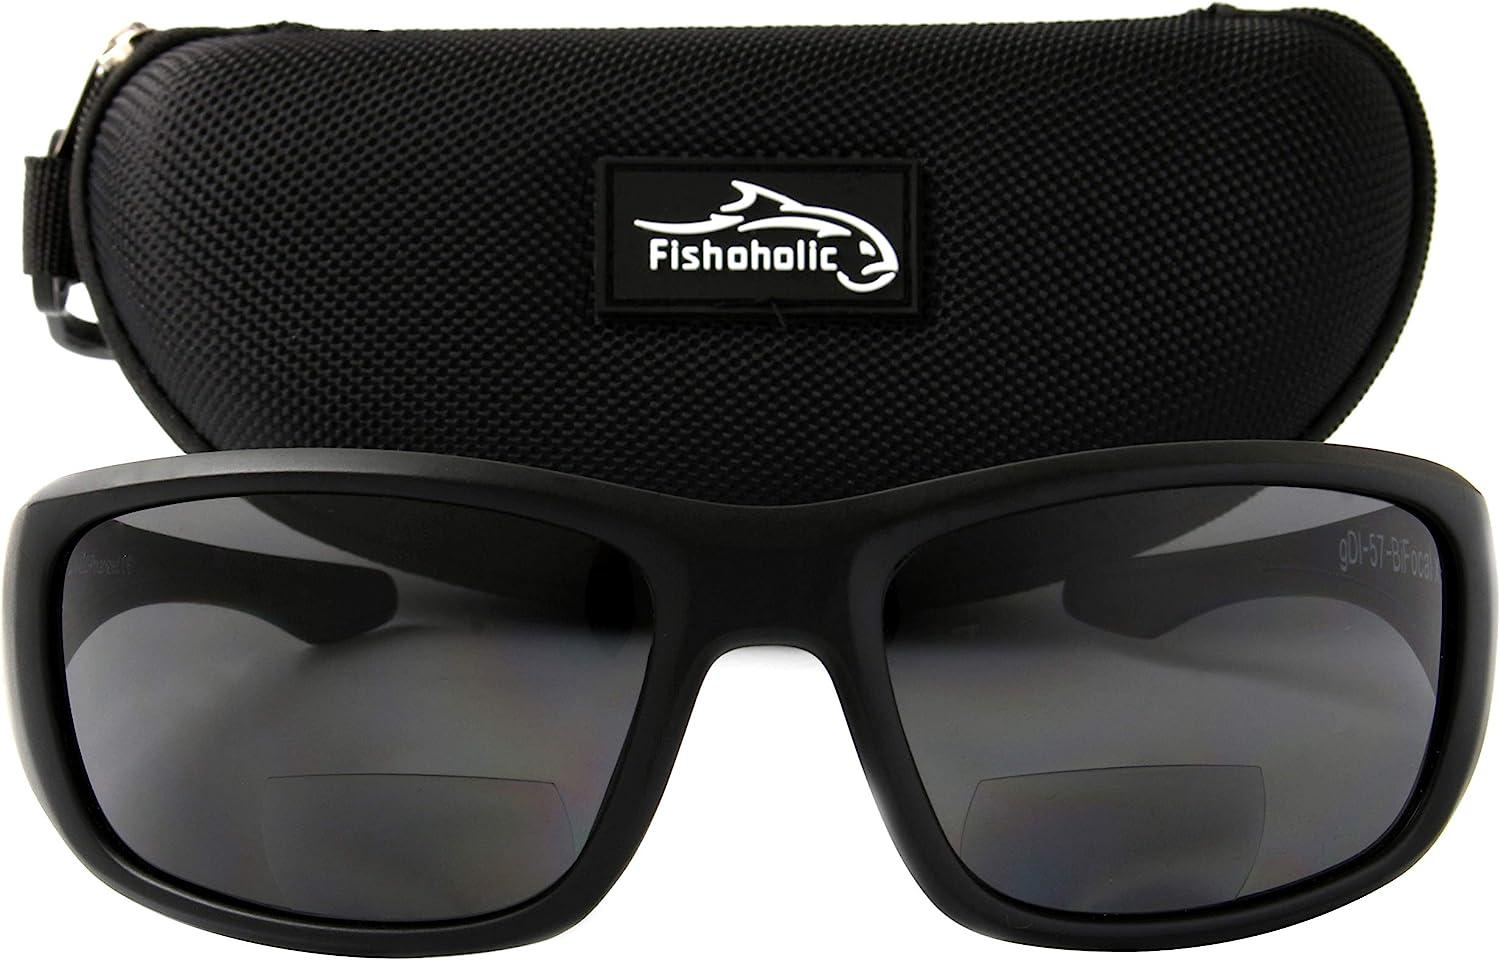 Fishoholic - BiFocal - Reader - Bi-Focal x1.5 x2.0 x2.5 Magnifications - Polarized  Fishing Sunglasses - UV400 - Fishing Gift M Black 2.5 2.5 x